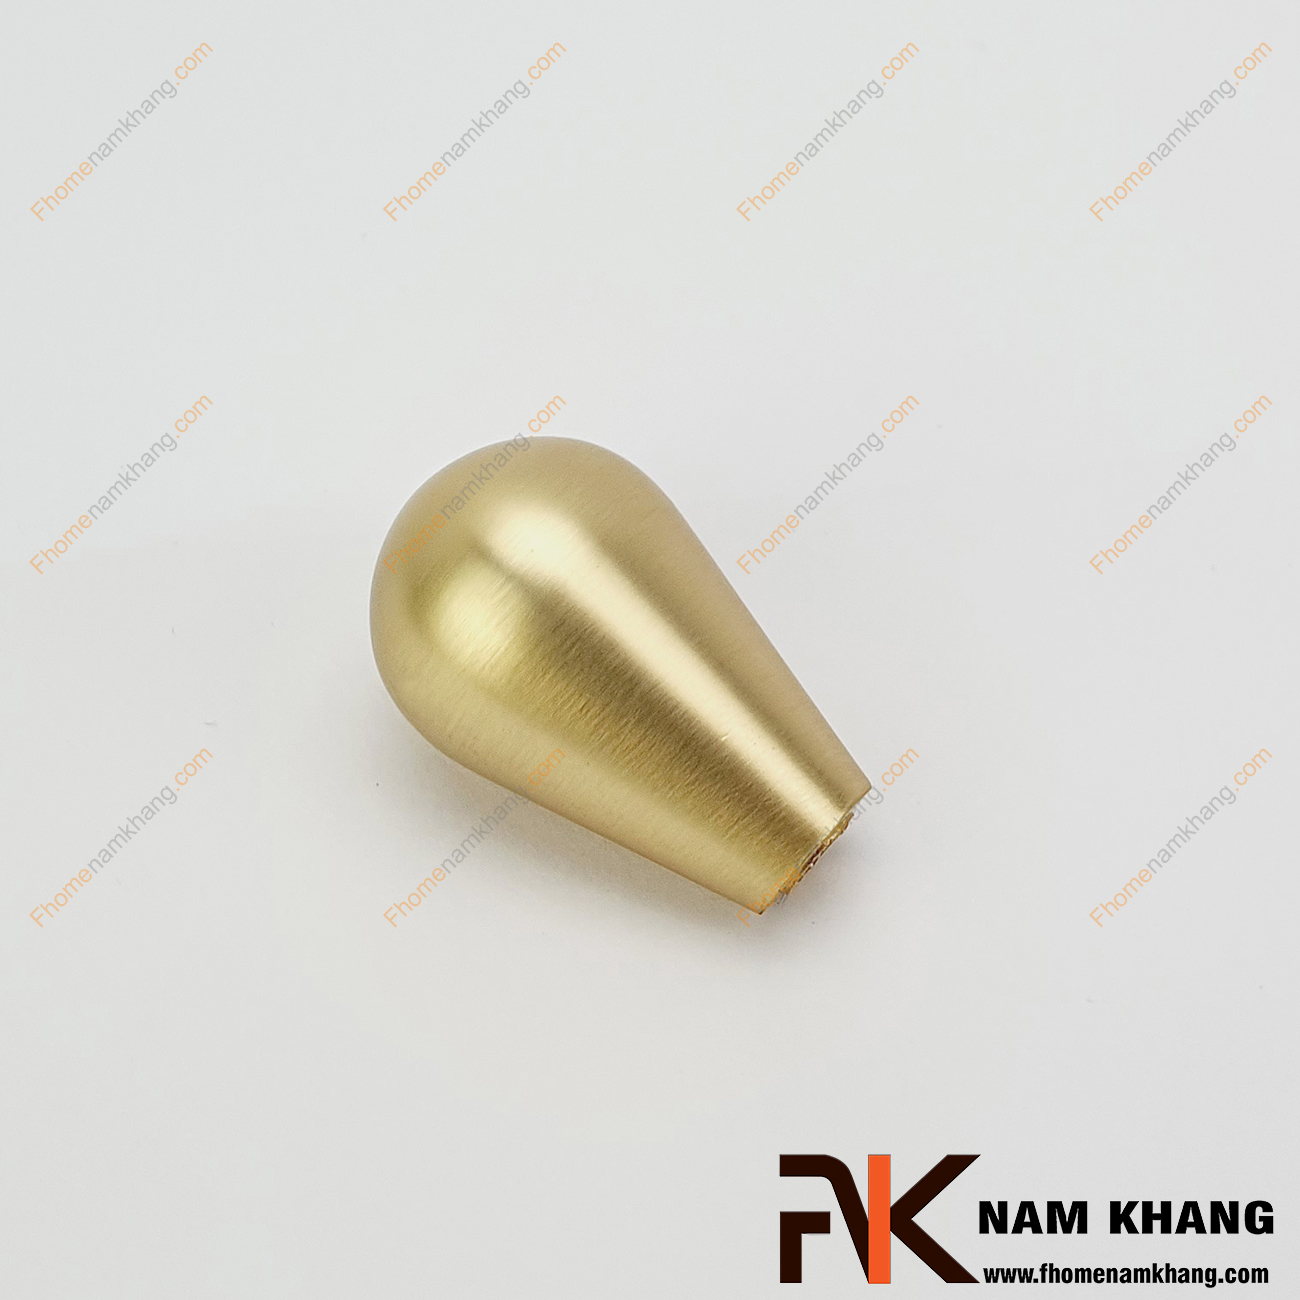 Núm cửa tủ dạng tròn màu vàng mờ NK211T-DVM- sản phẩm phụ kiện tủ nhỏ gọn thiết kế đơn giản bo tròn nhẹ nàng và sỡ hữu màu mạ ấn tượng dễ dàng phối hợp.